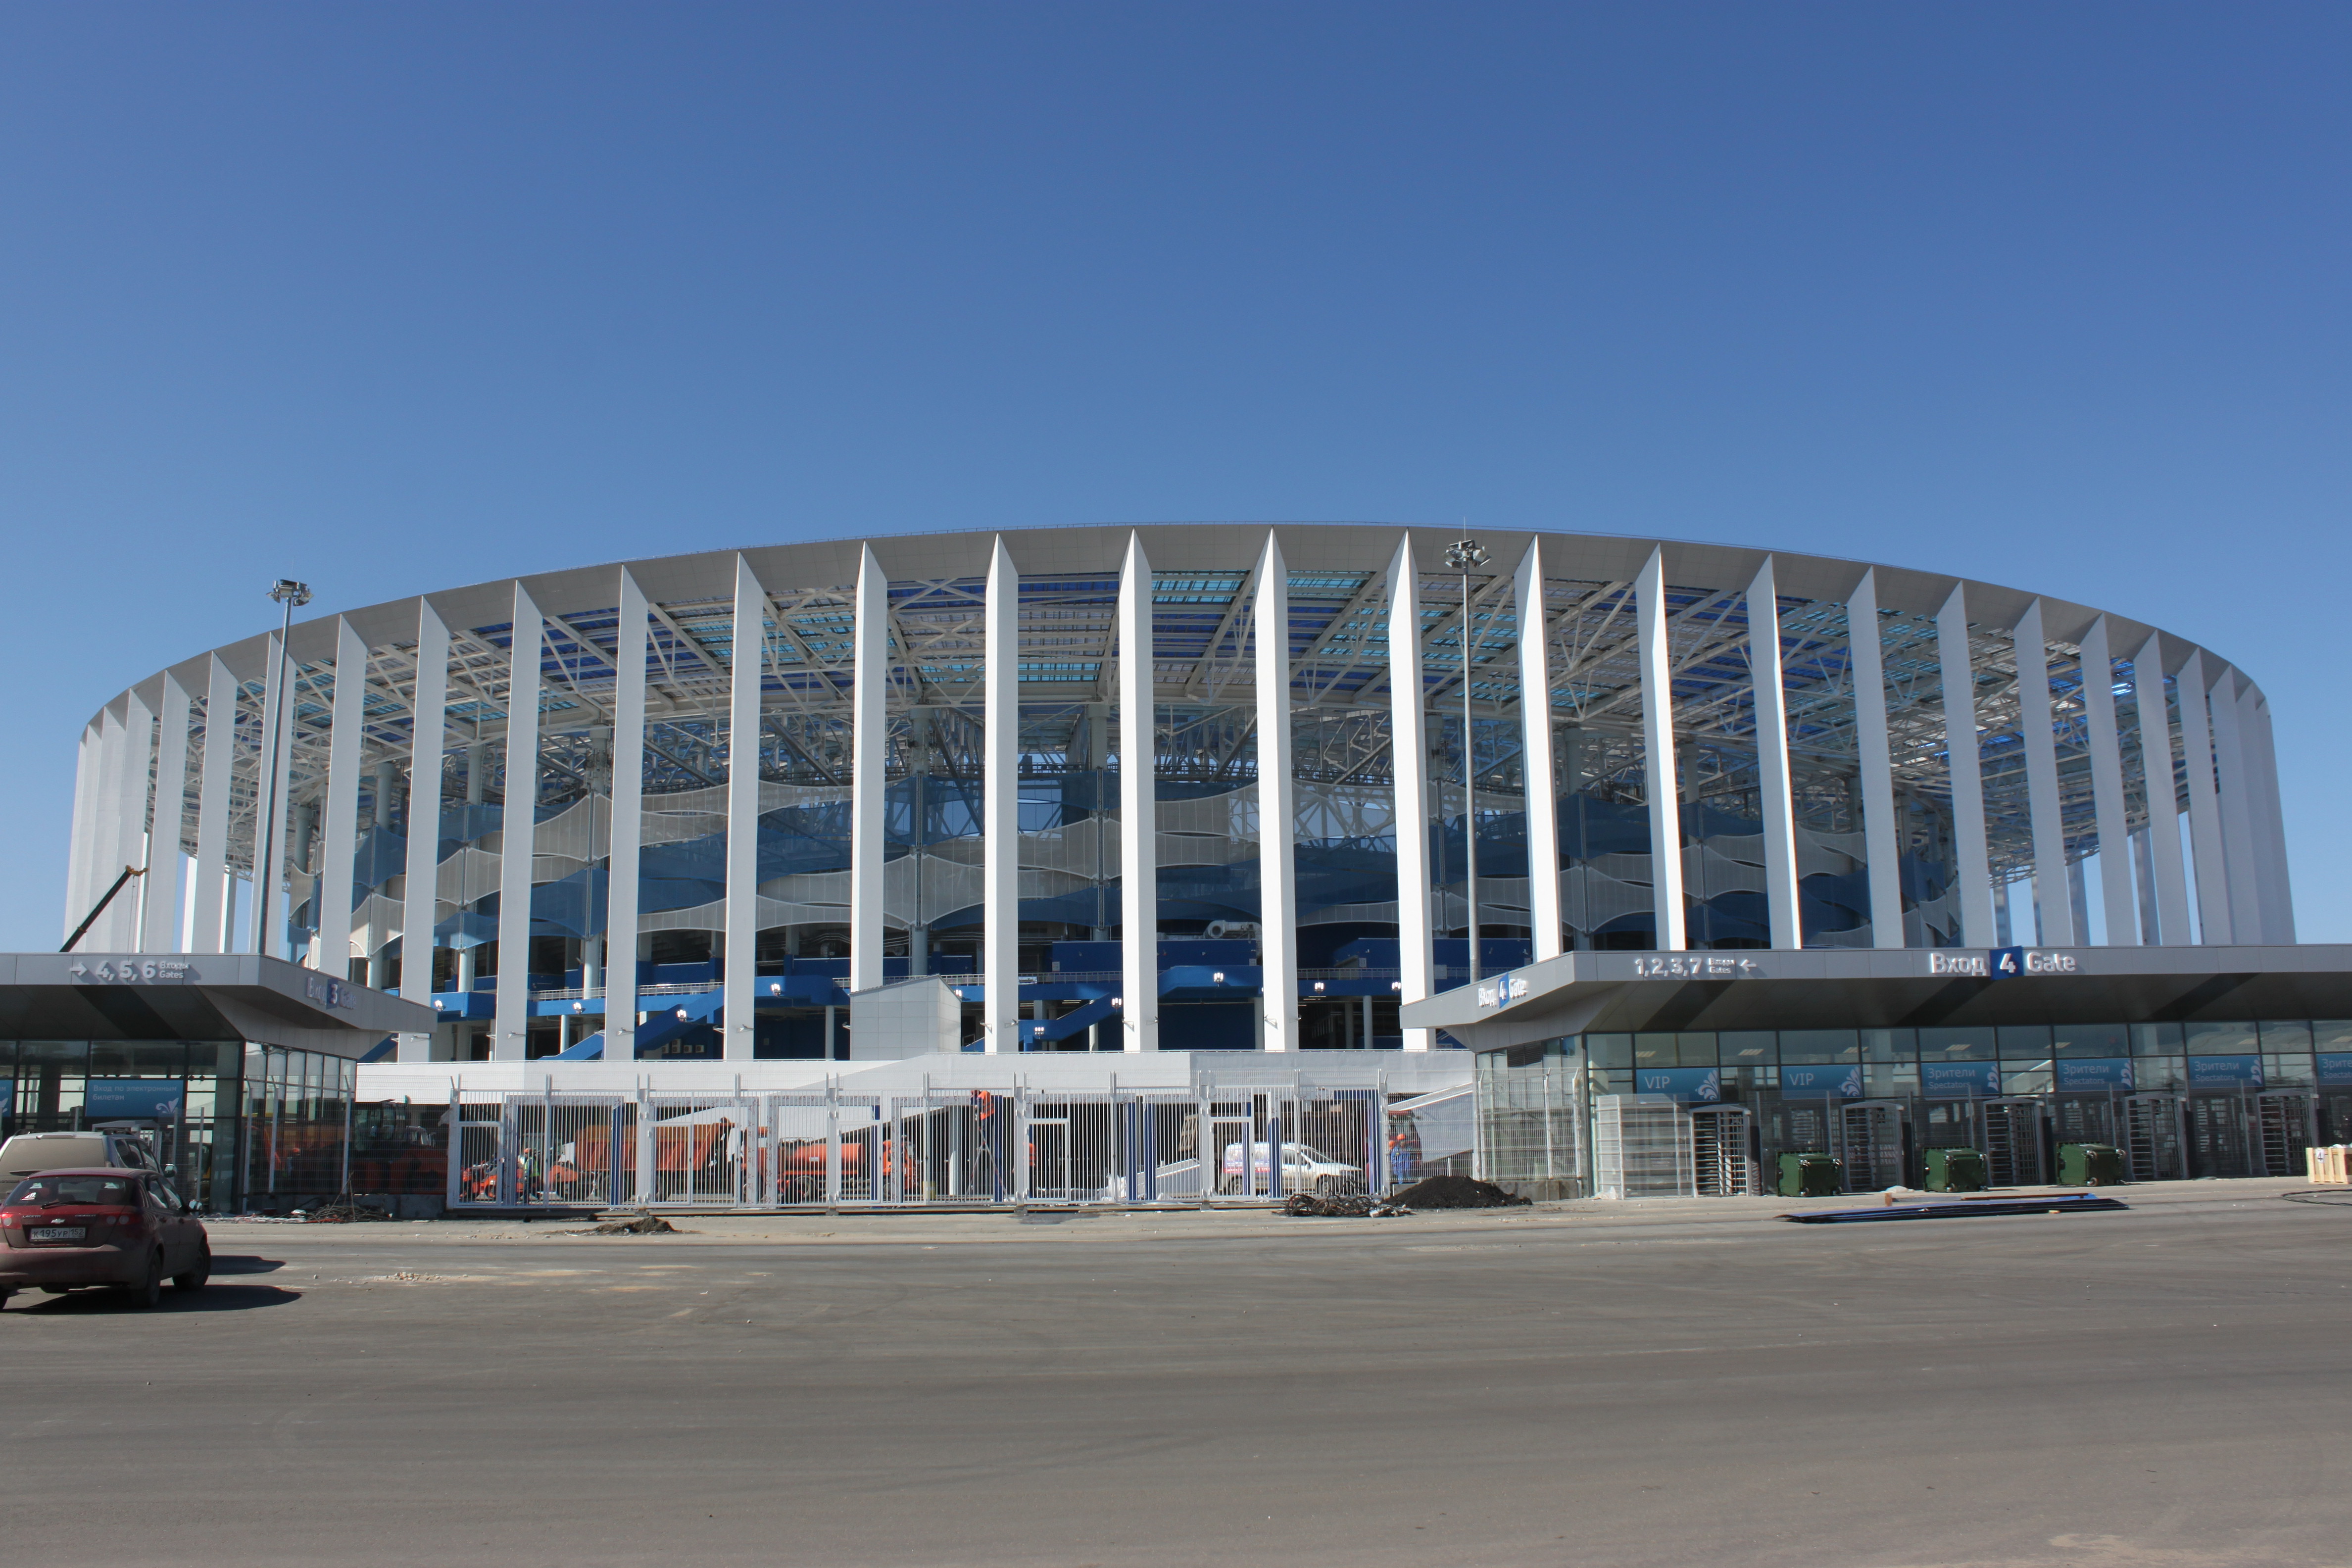 Бизнес-план операционной деятельности стадиона Нижний Новгород утвержден Глебом Никитиным